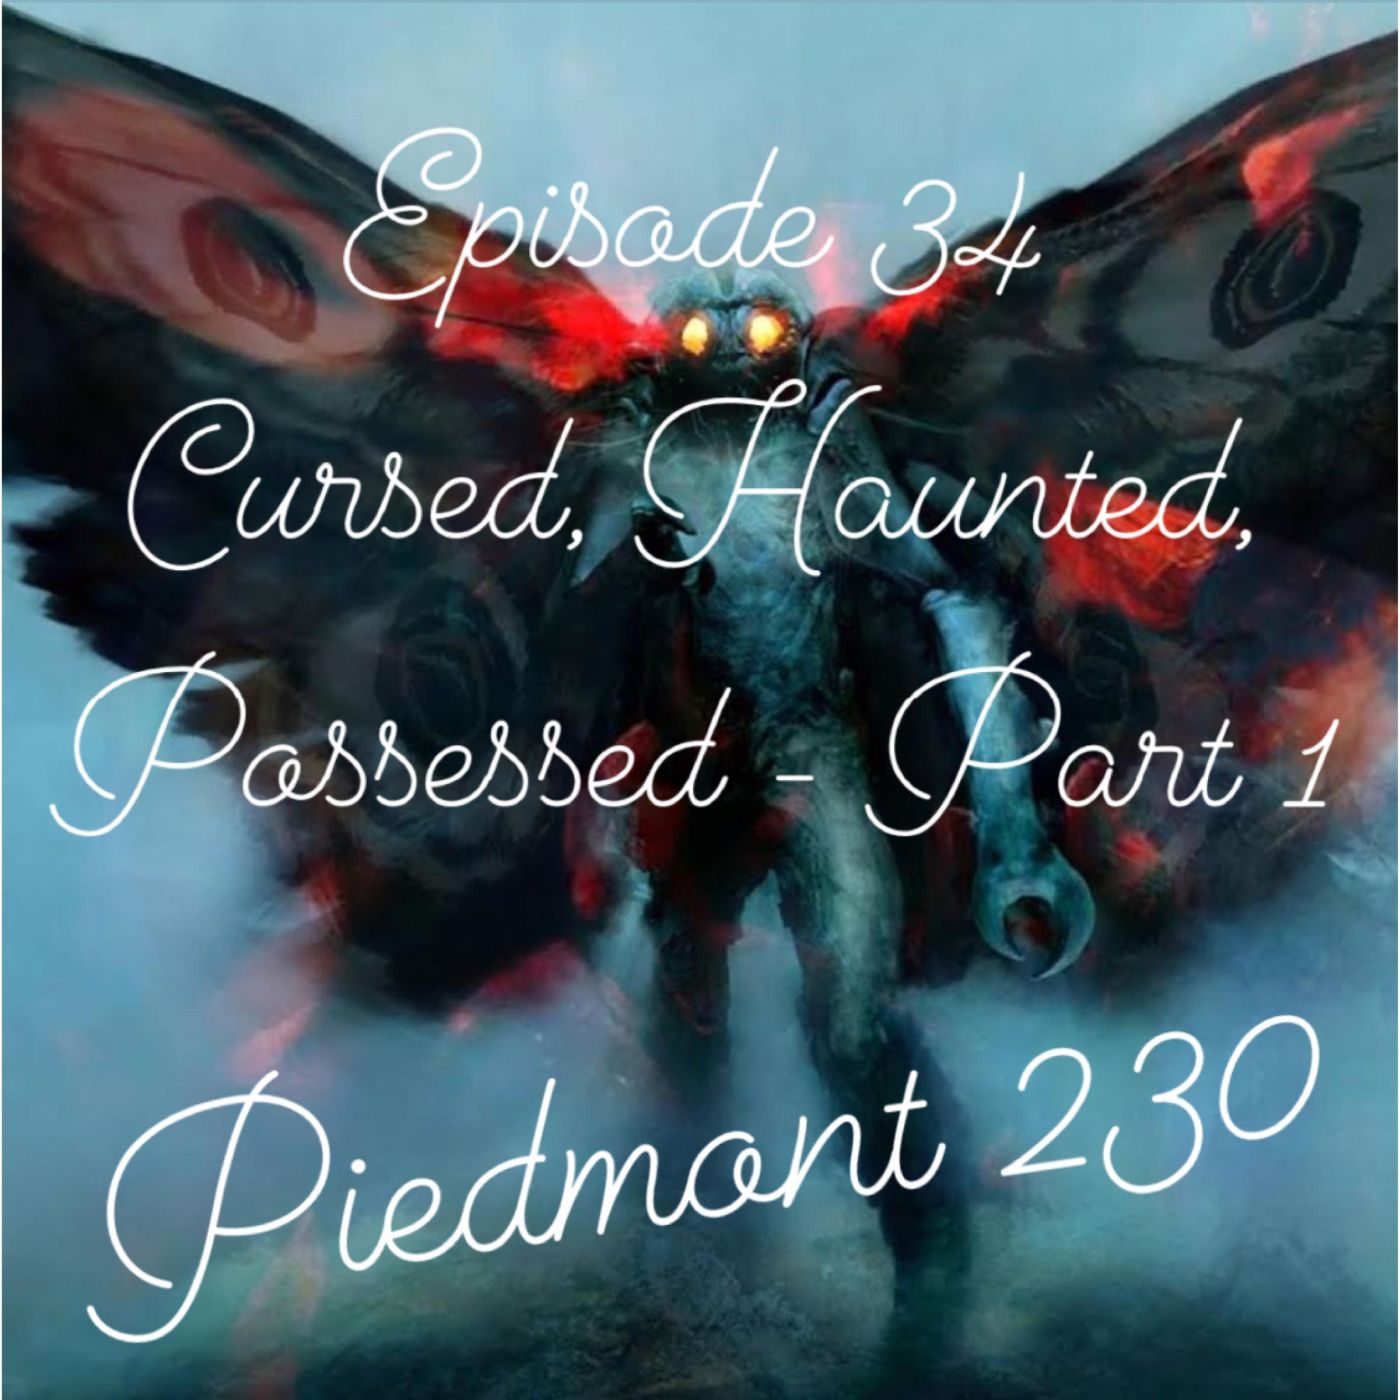 34. Cursed, Haunted, Possessed - Part 1 - Piedmont 230